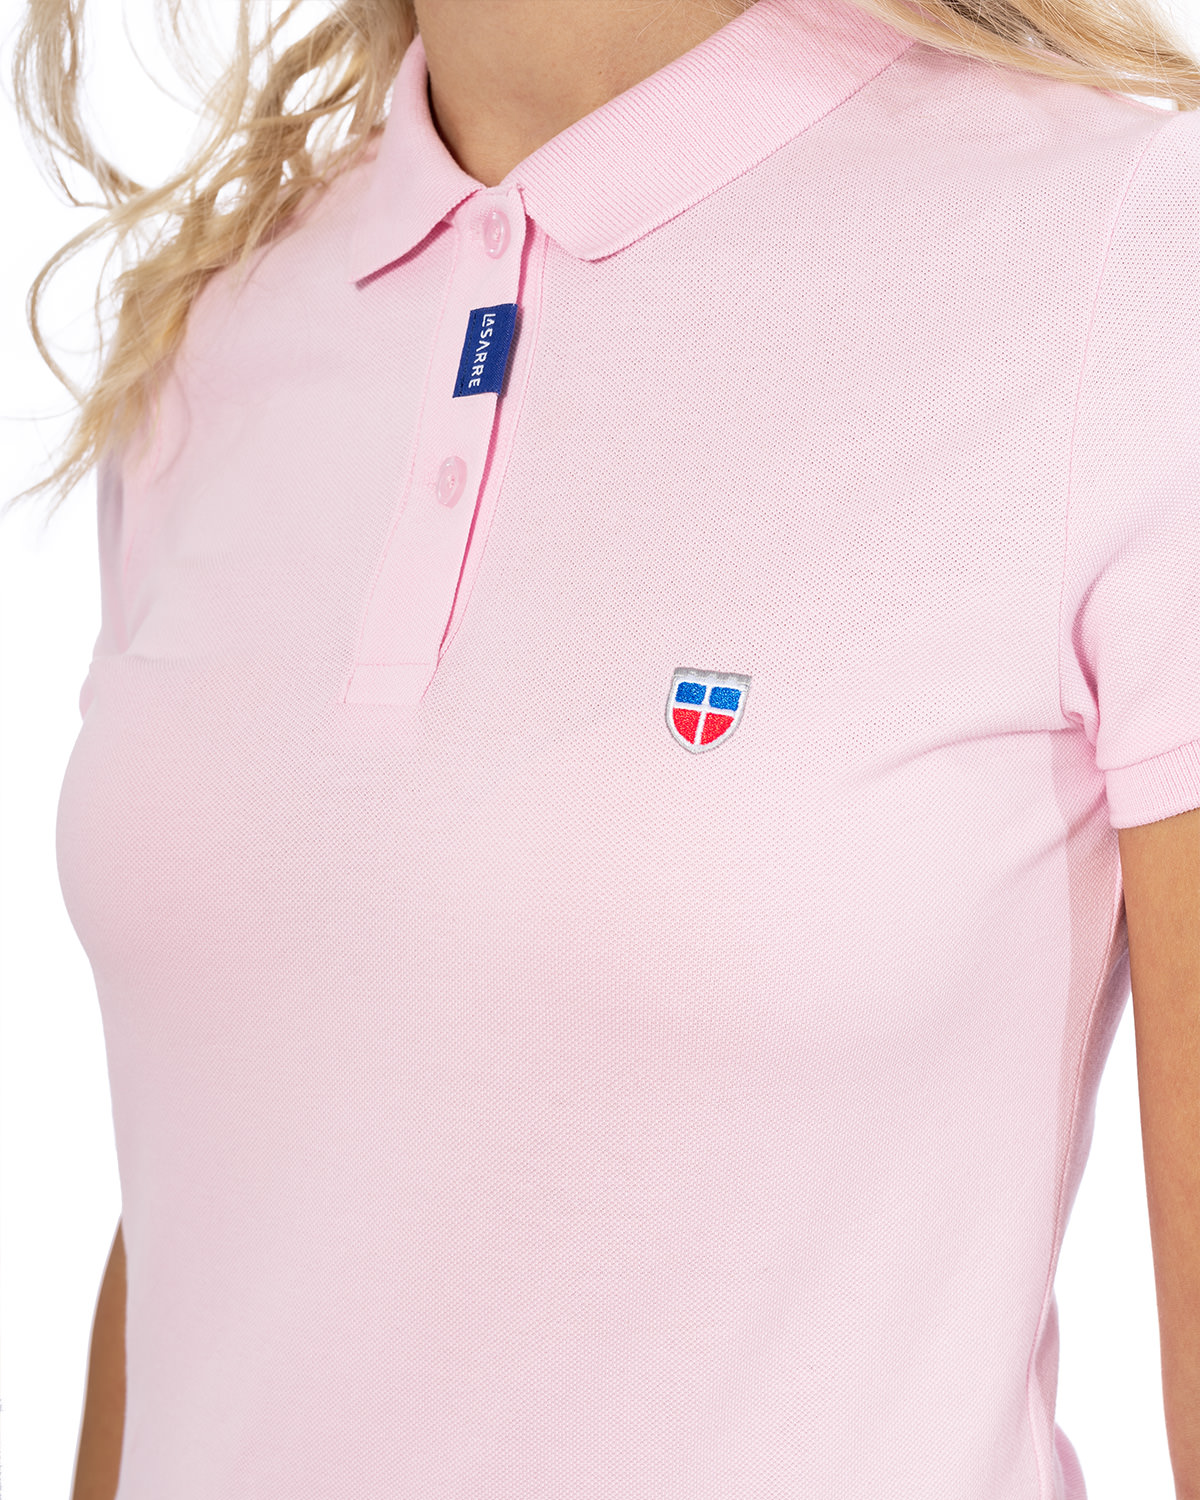 Vorder-Ansicht des hochwertig bestickten LA SARRE Frauen Polo Shirt in der besonderen Farbe Rosé von der Saarland Marke Lasarre mit LASARRE Wappen in Blau, Weiß, Rot auf der linken Brust und dem blauen LASARRE Markenzeichen an der Knopfleiste